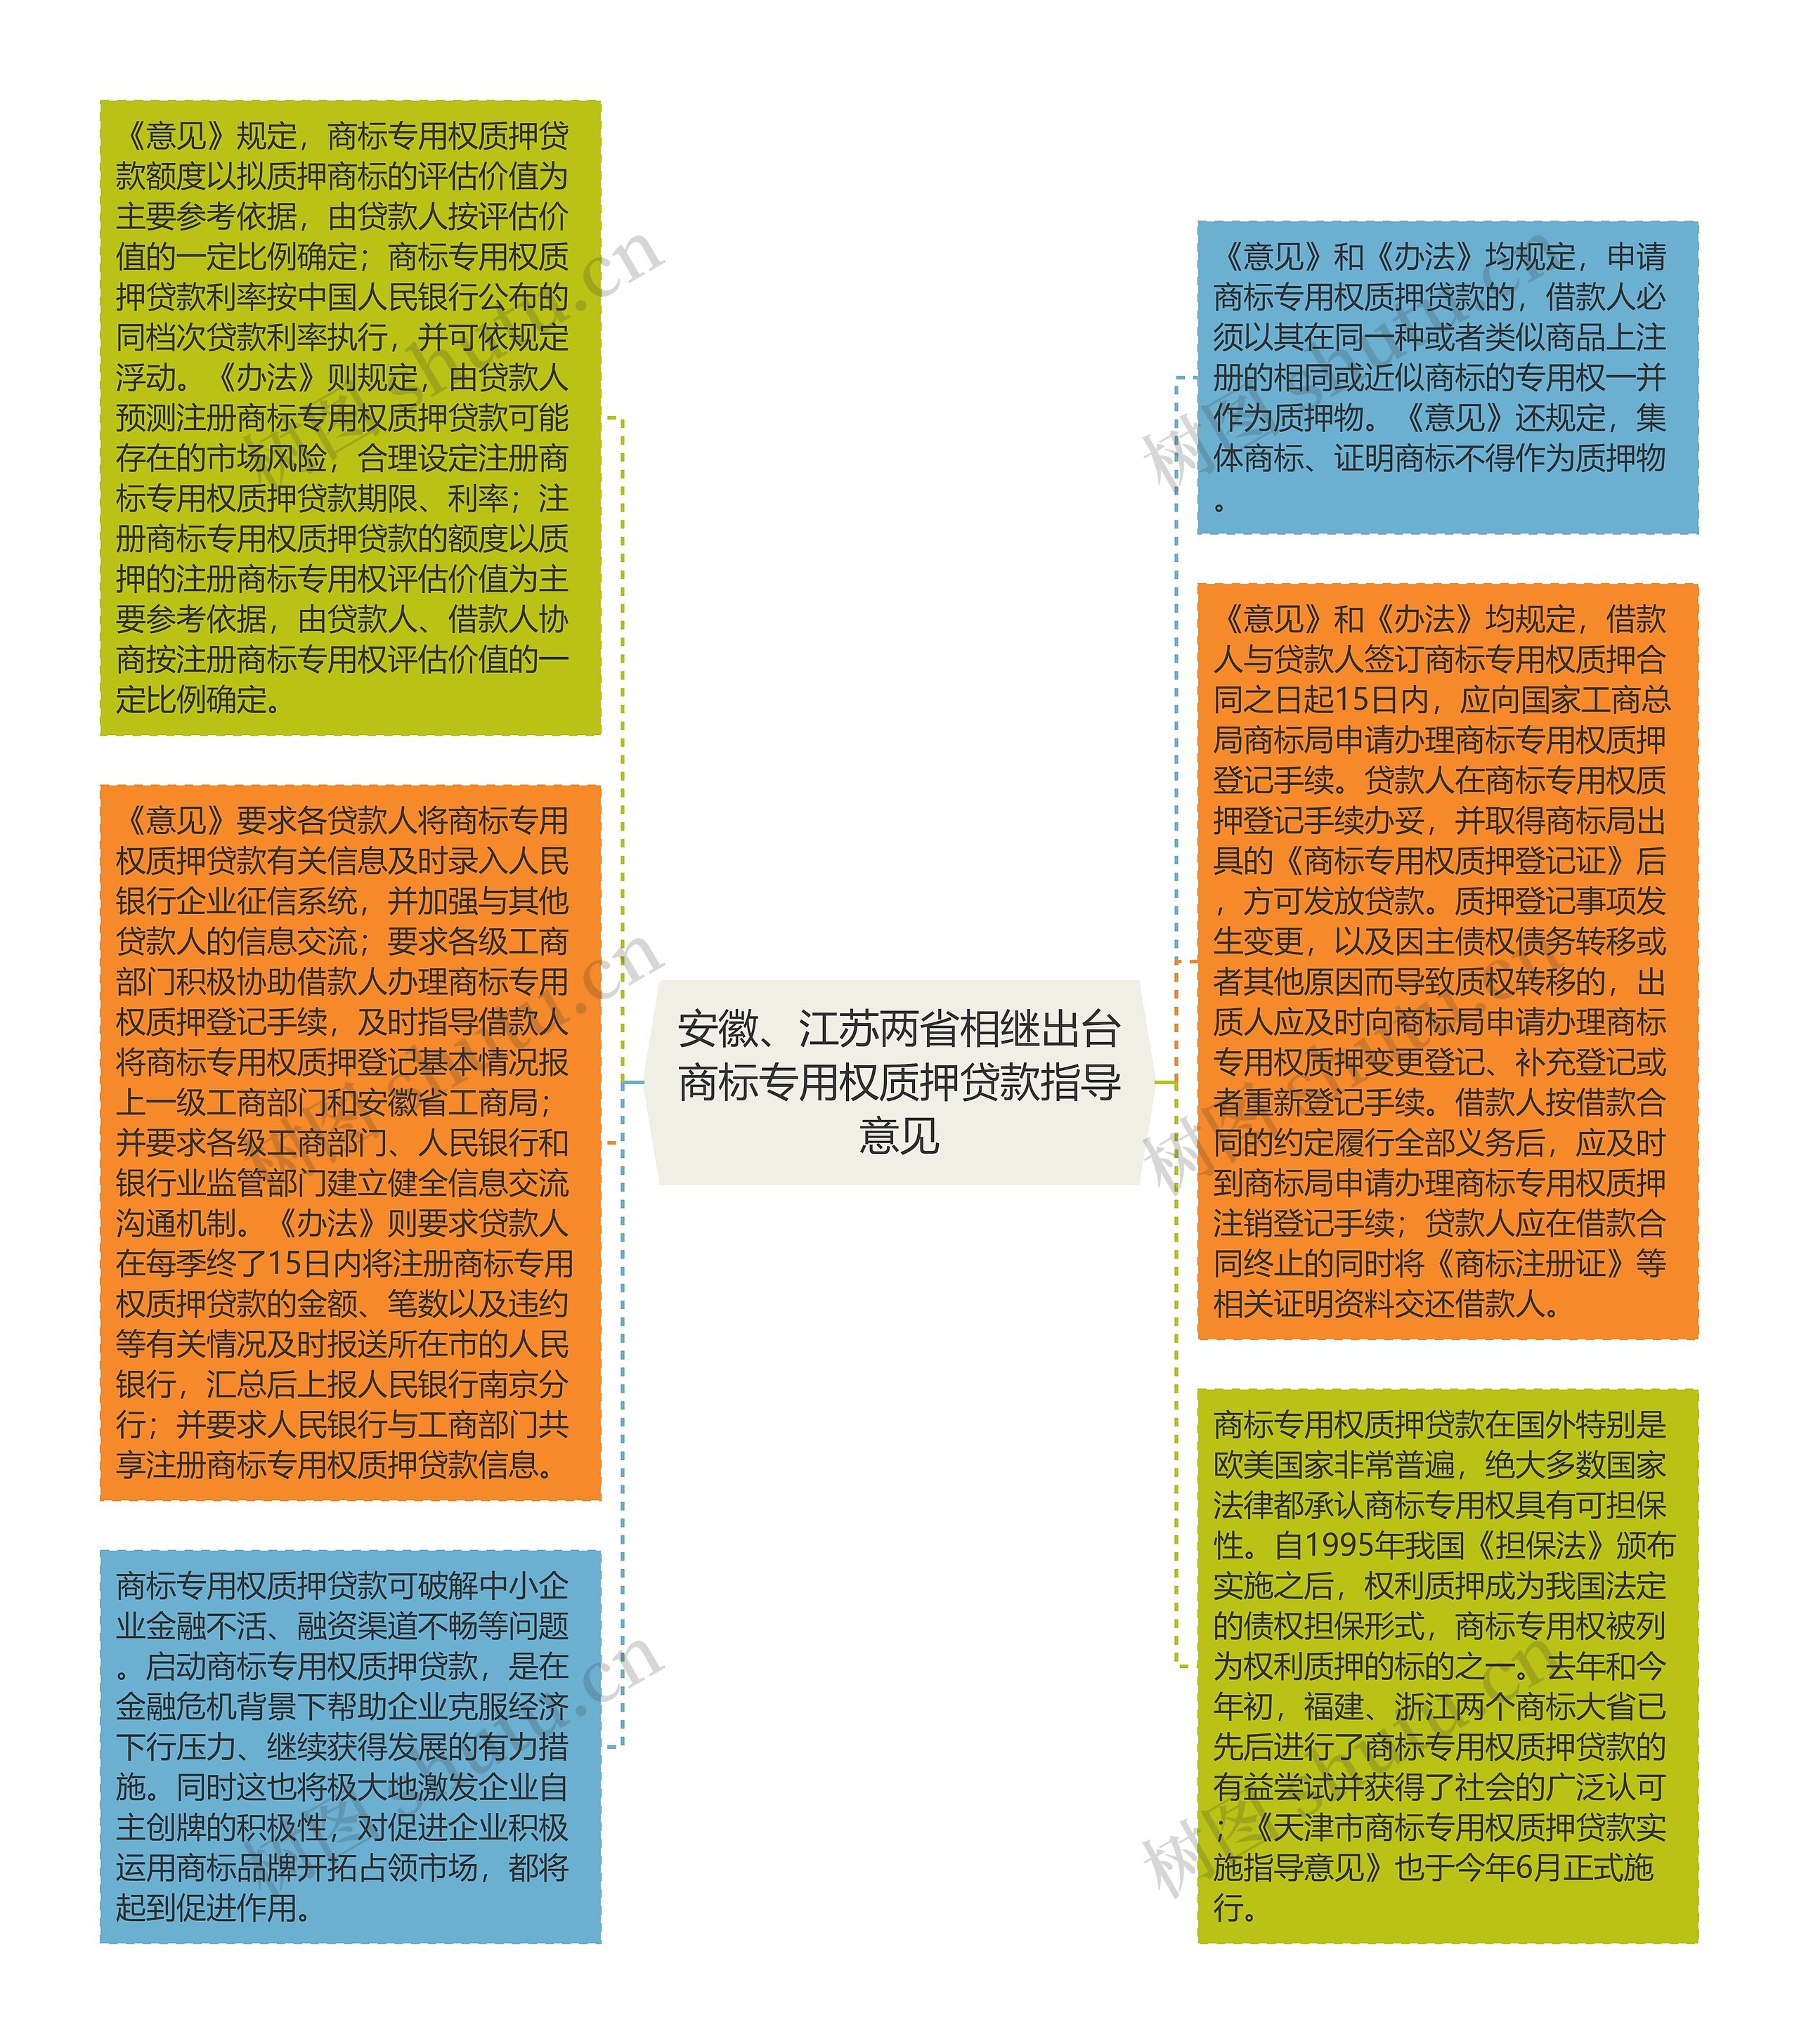 安徽、江苏两省相继出台商标专用权质押贷款指导意见思维导图